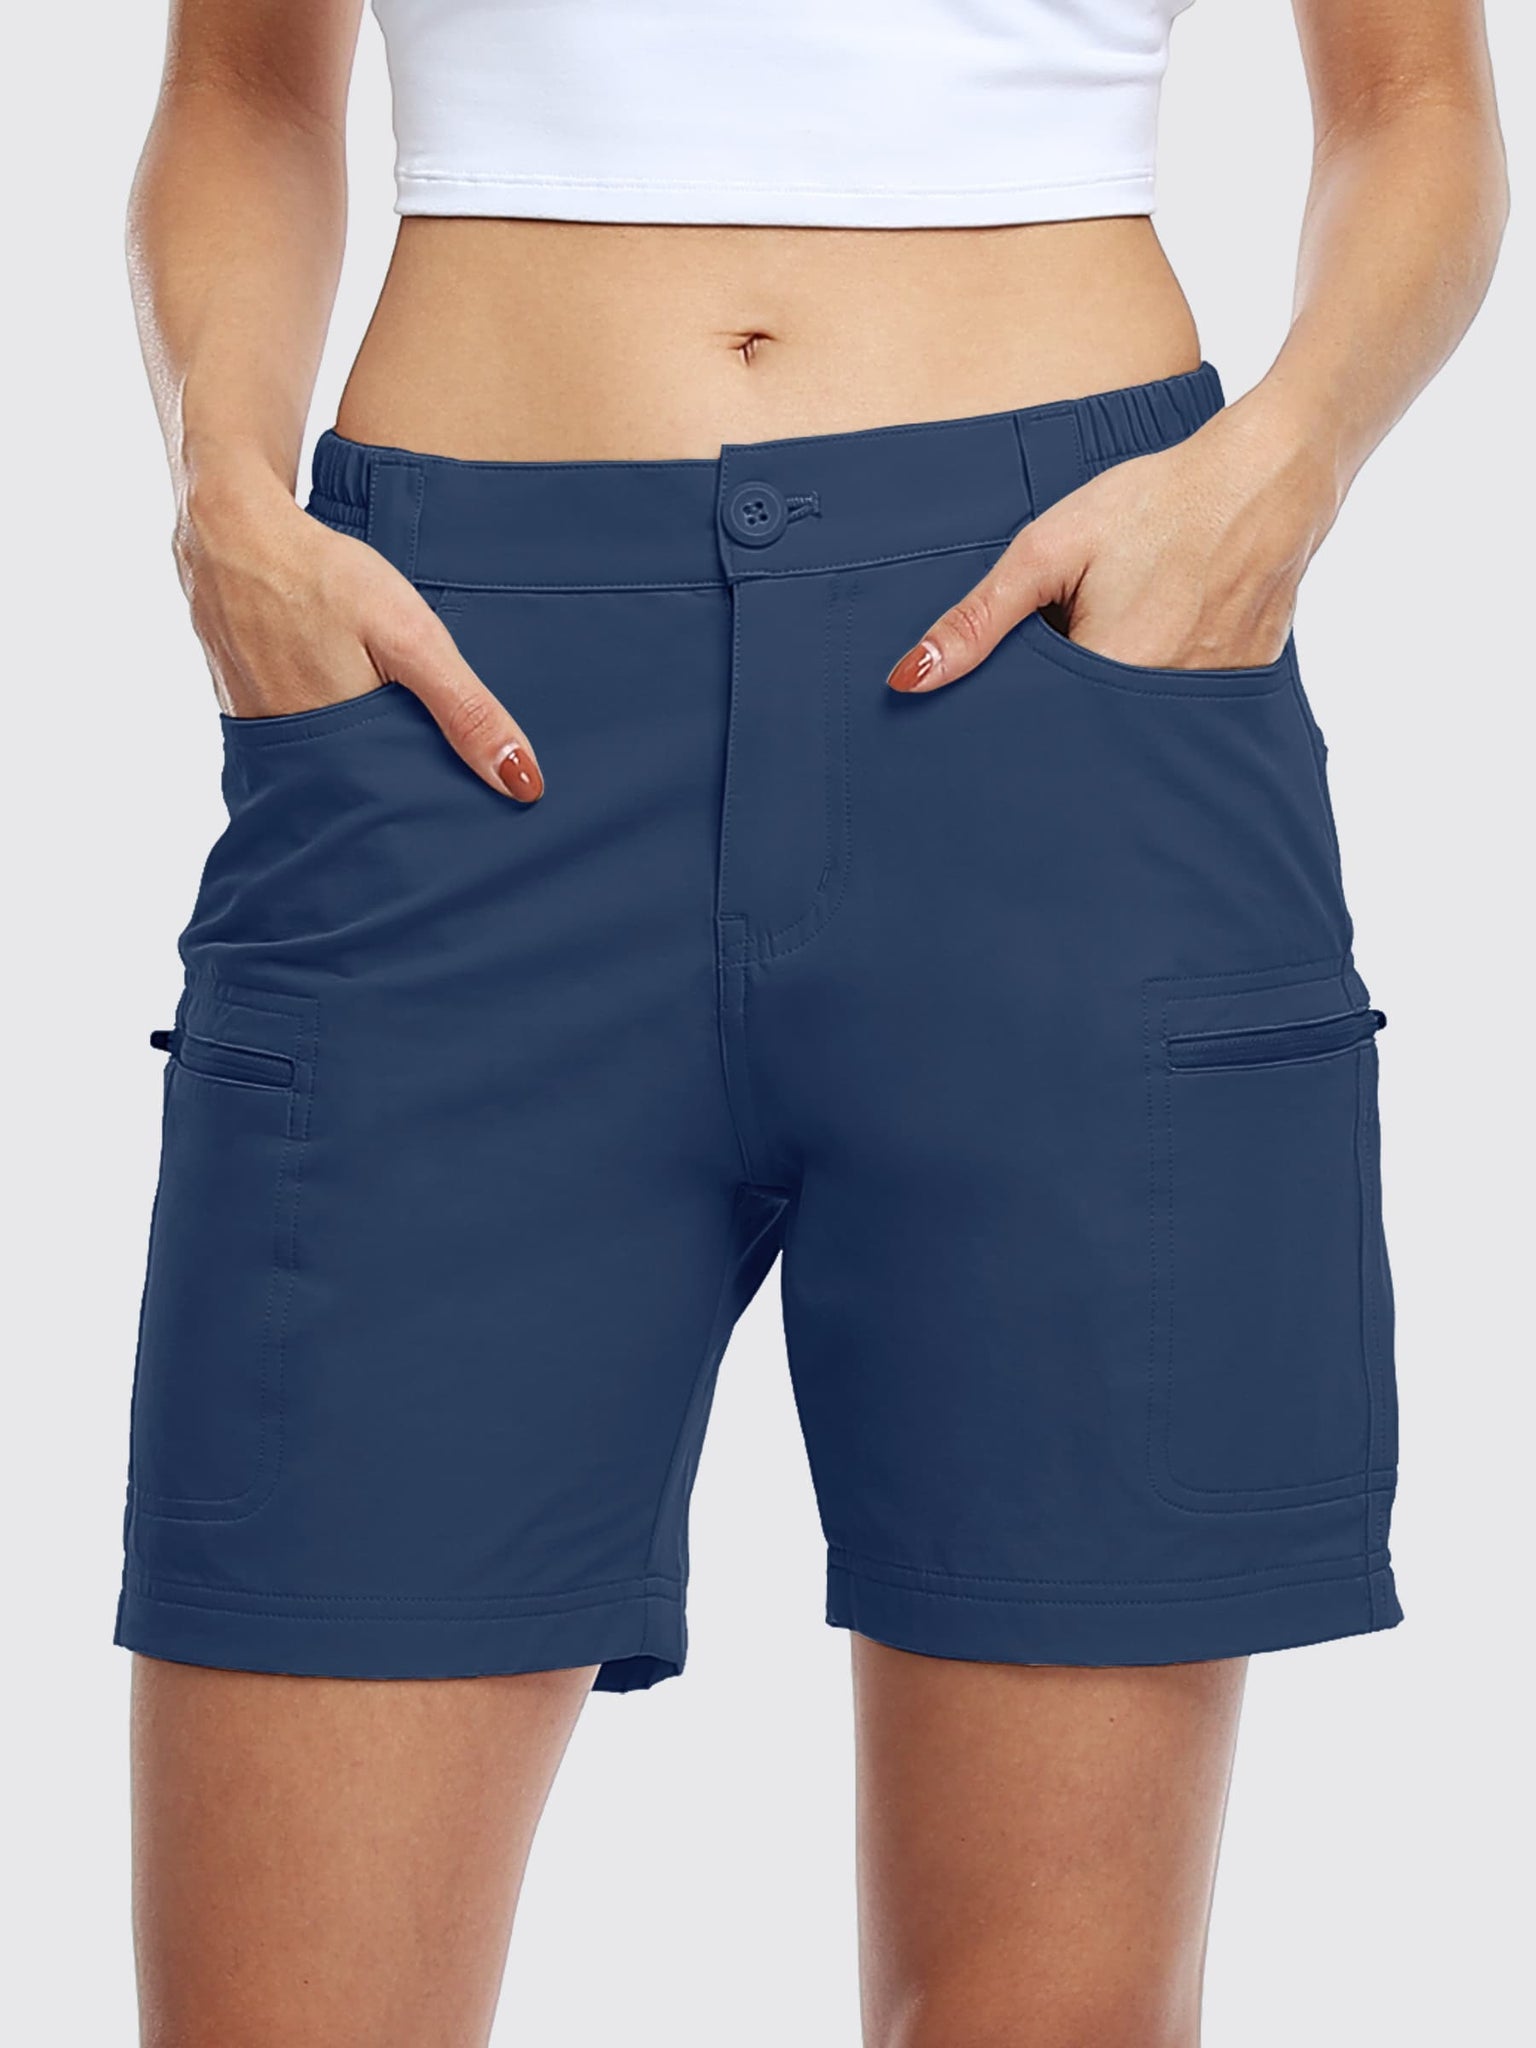 Willit Women's Outdoor Cargo Shorts 6 Inseam_Navy_model1